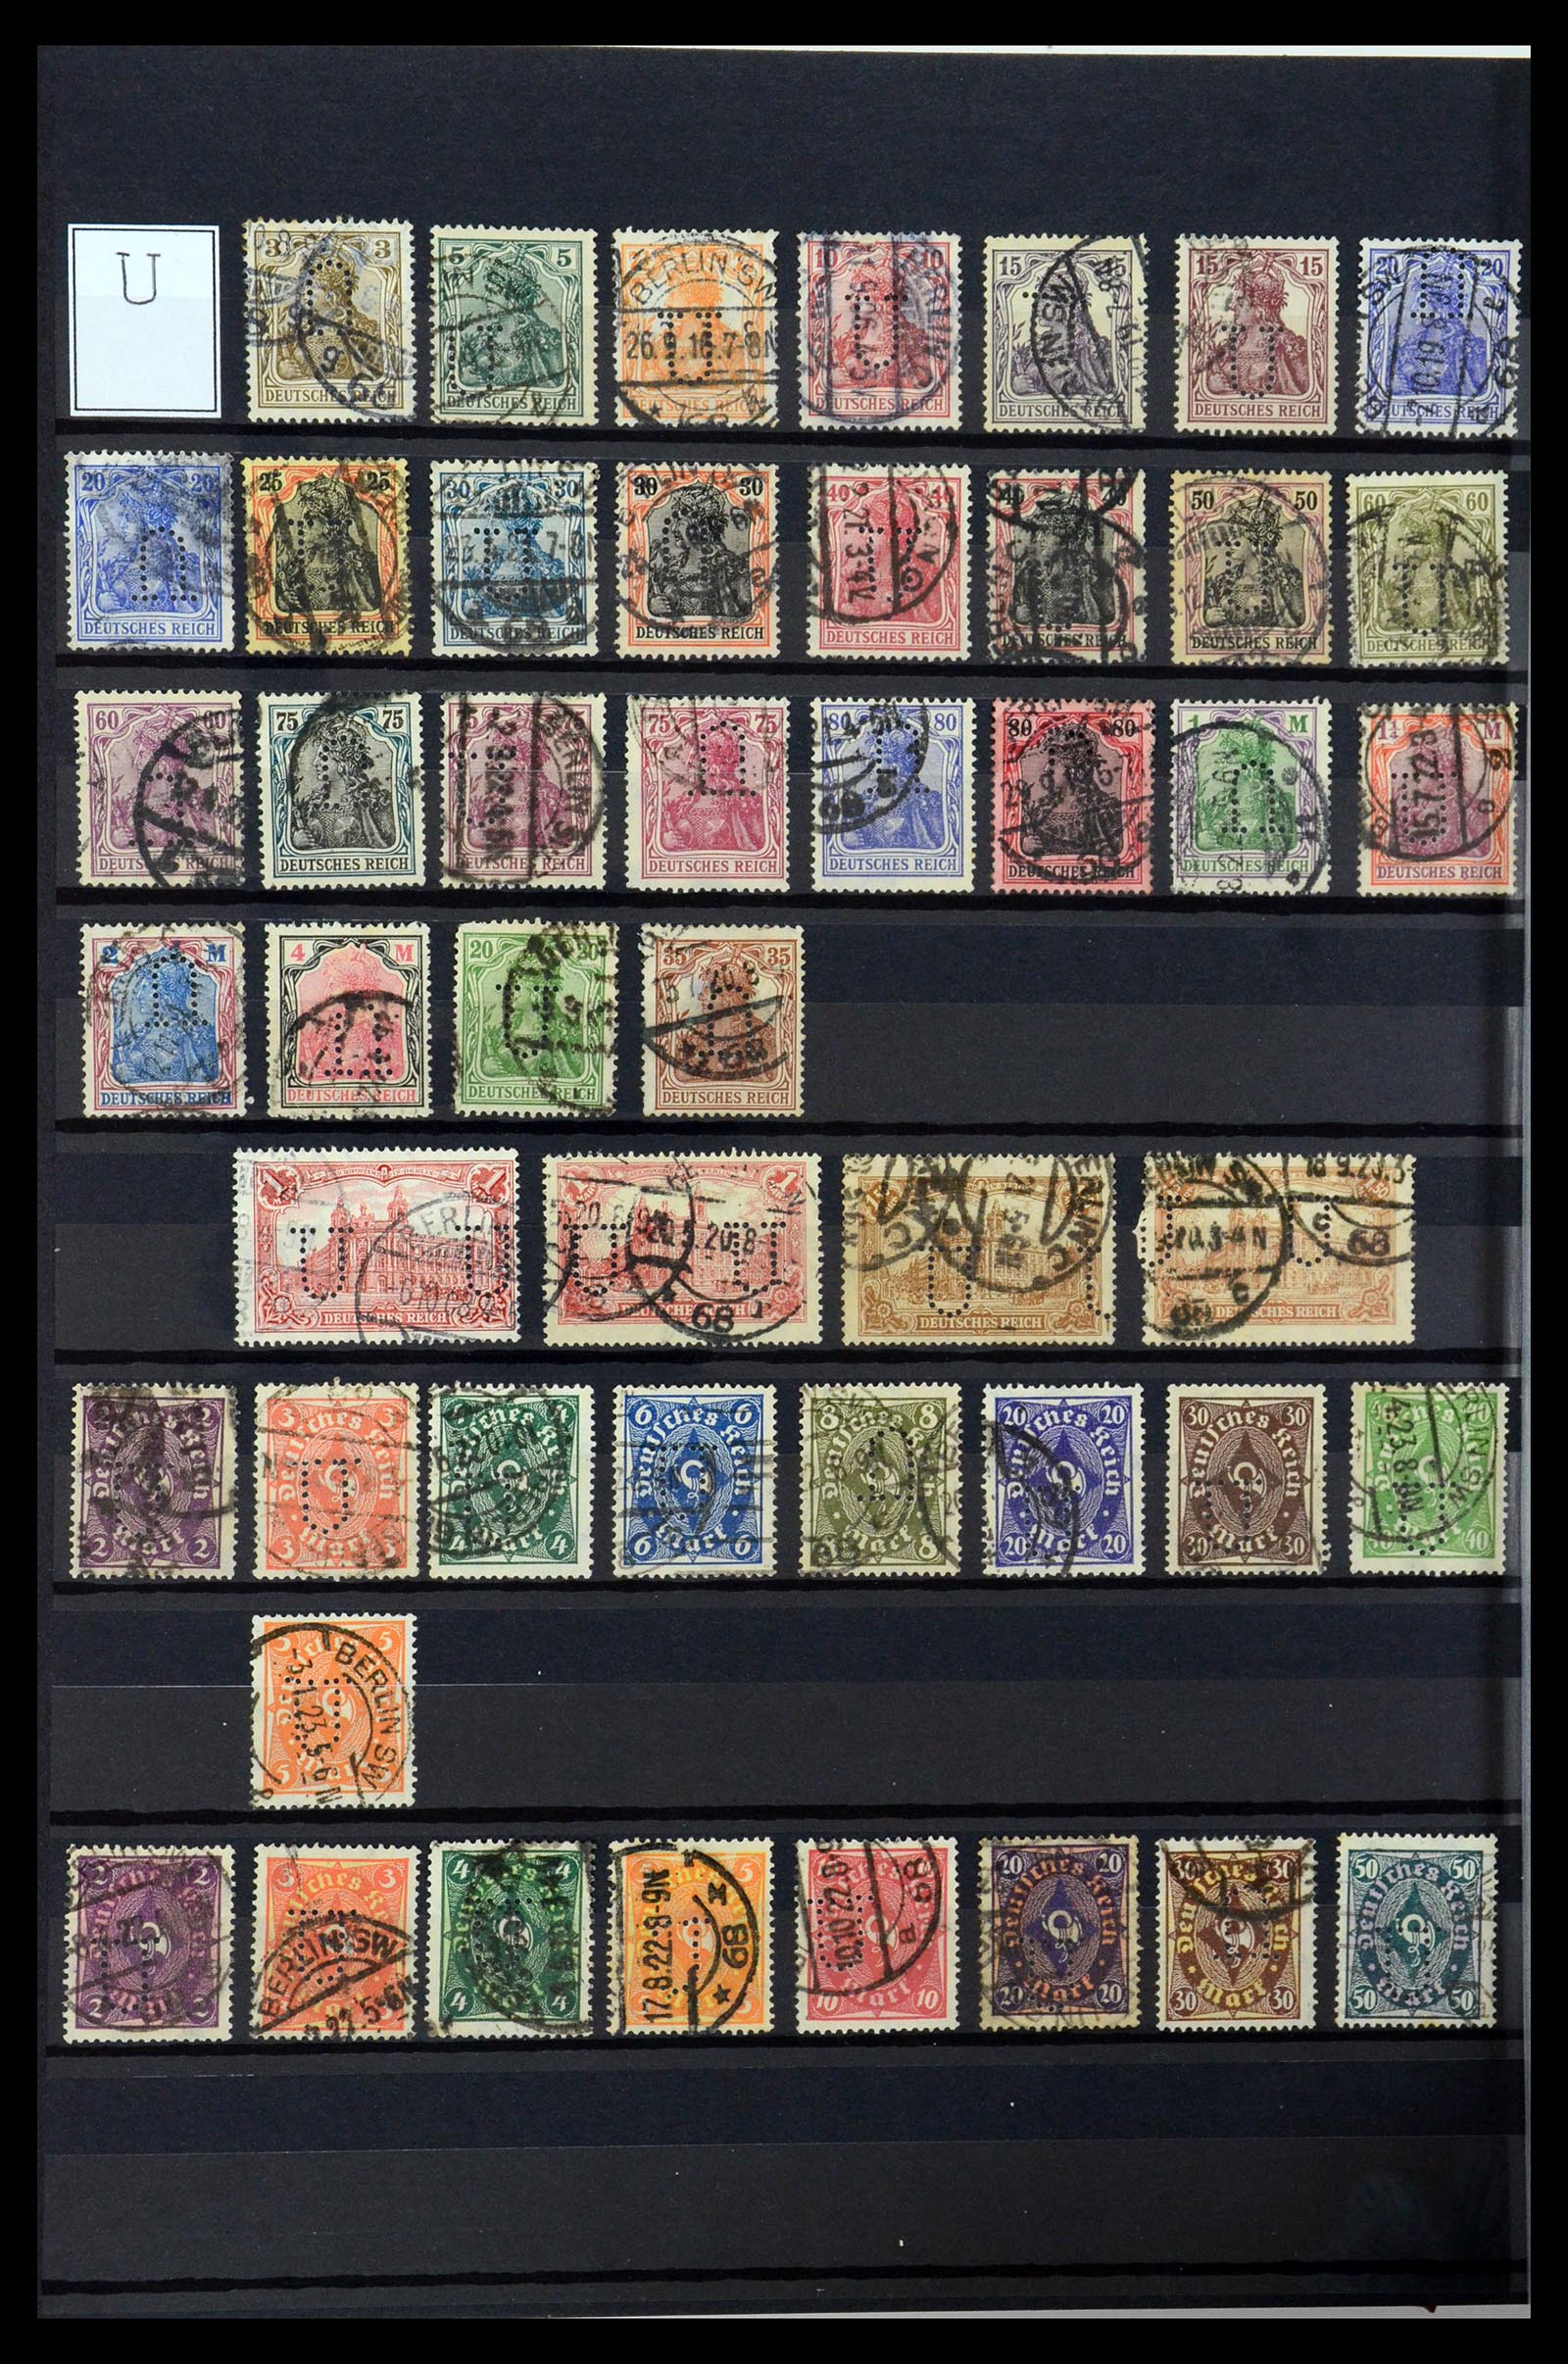 36405 317 - Stamp collection 36405 German Reich perfins 1880-1945.